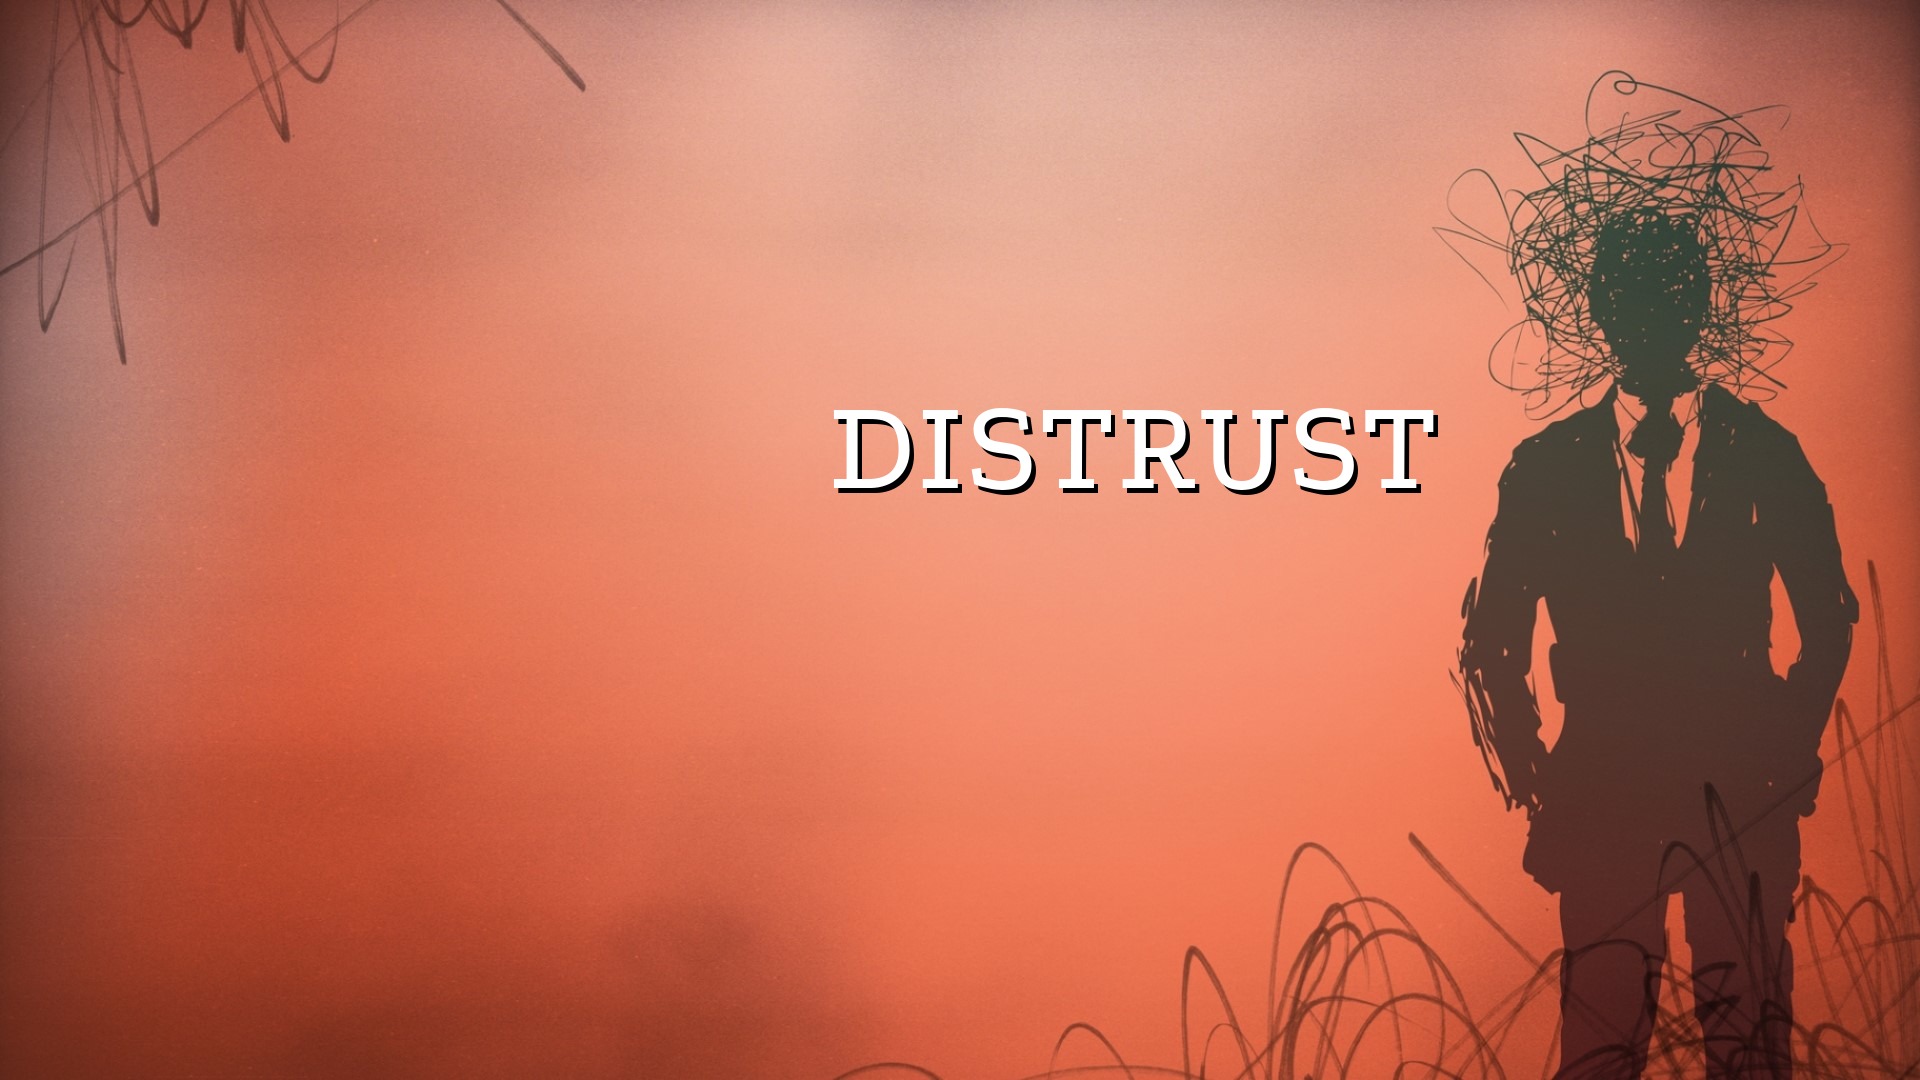 Distrust